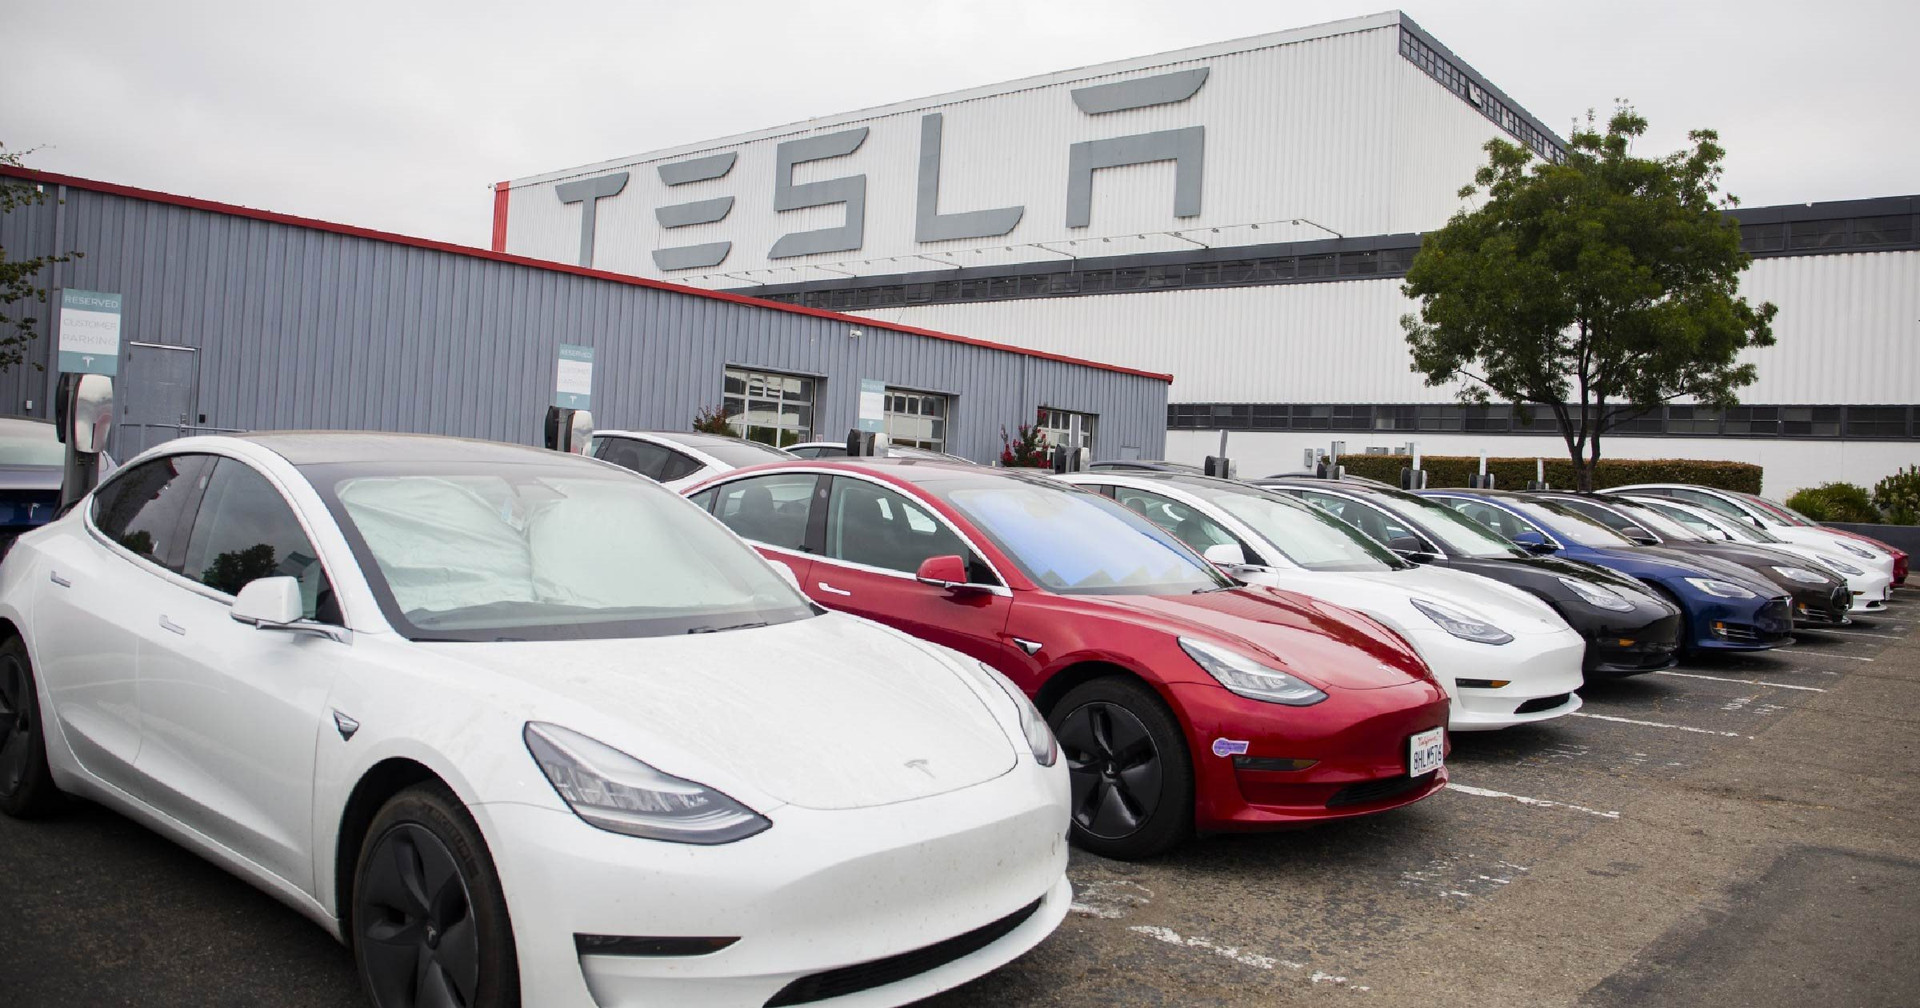 Bí mật xấu xí của Tesla: Làm xe điện nhưng xả hàng chục triệu tấn CO2, bị điều tra vì ngó lơ yếu tố khí thải